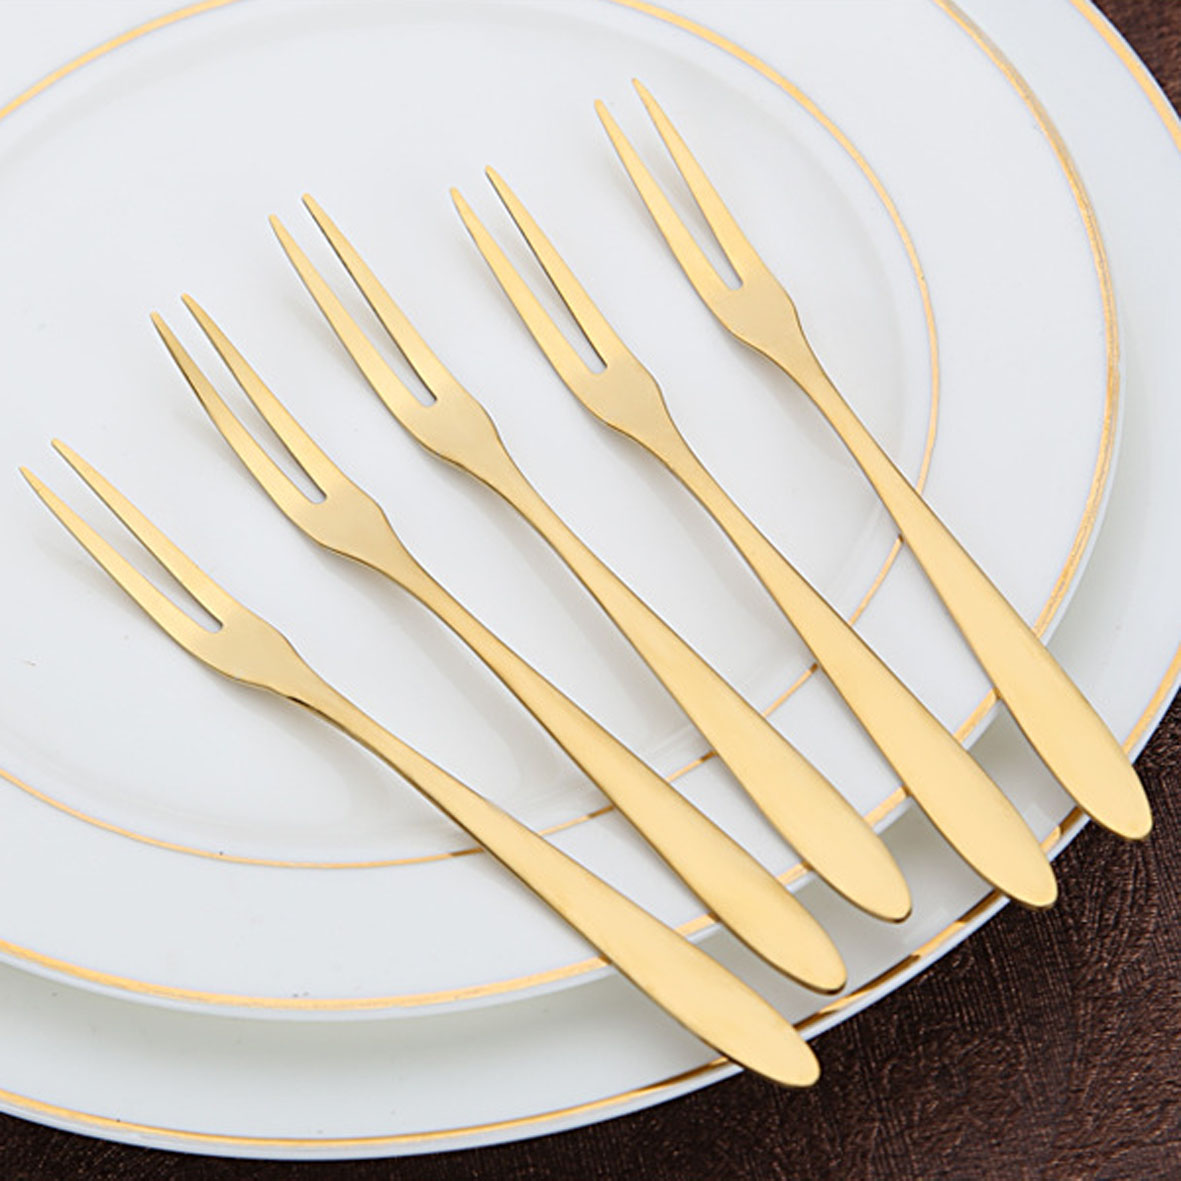 GL-AAJ1127 Set of 5 Gold Dessert Forks